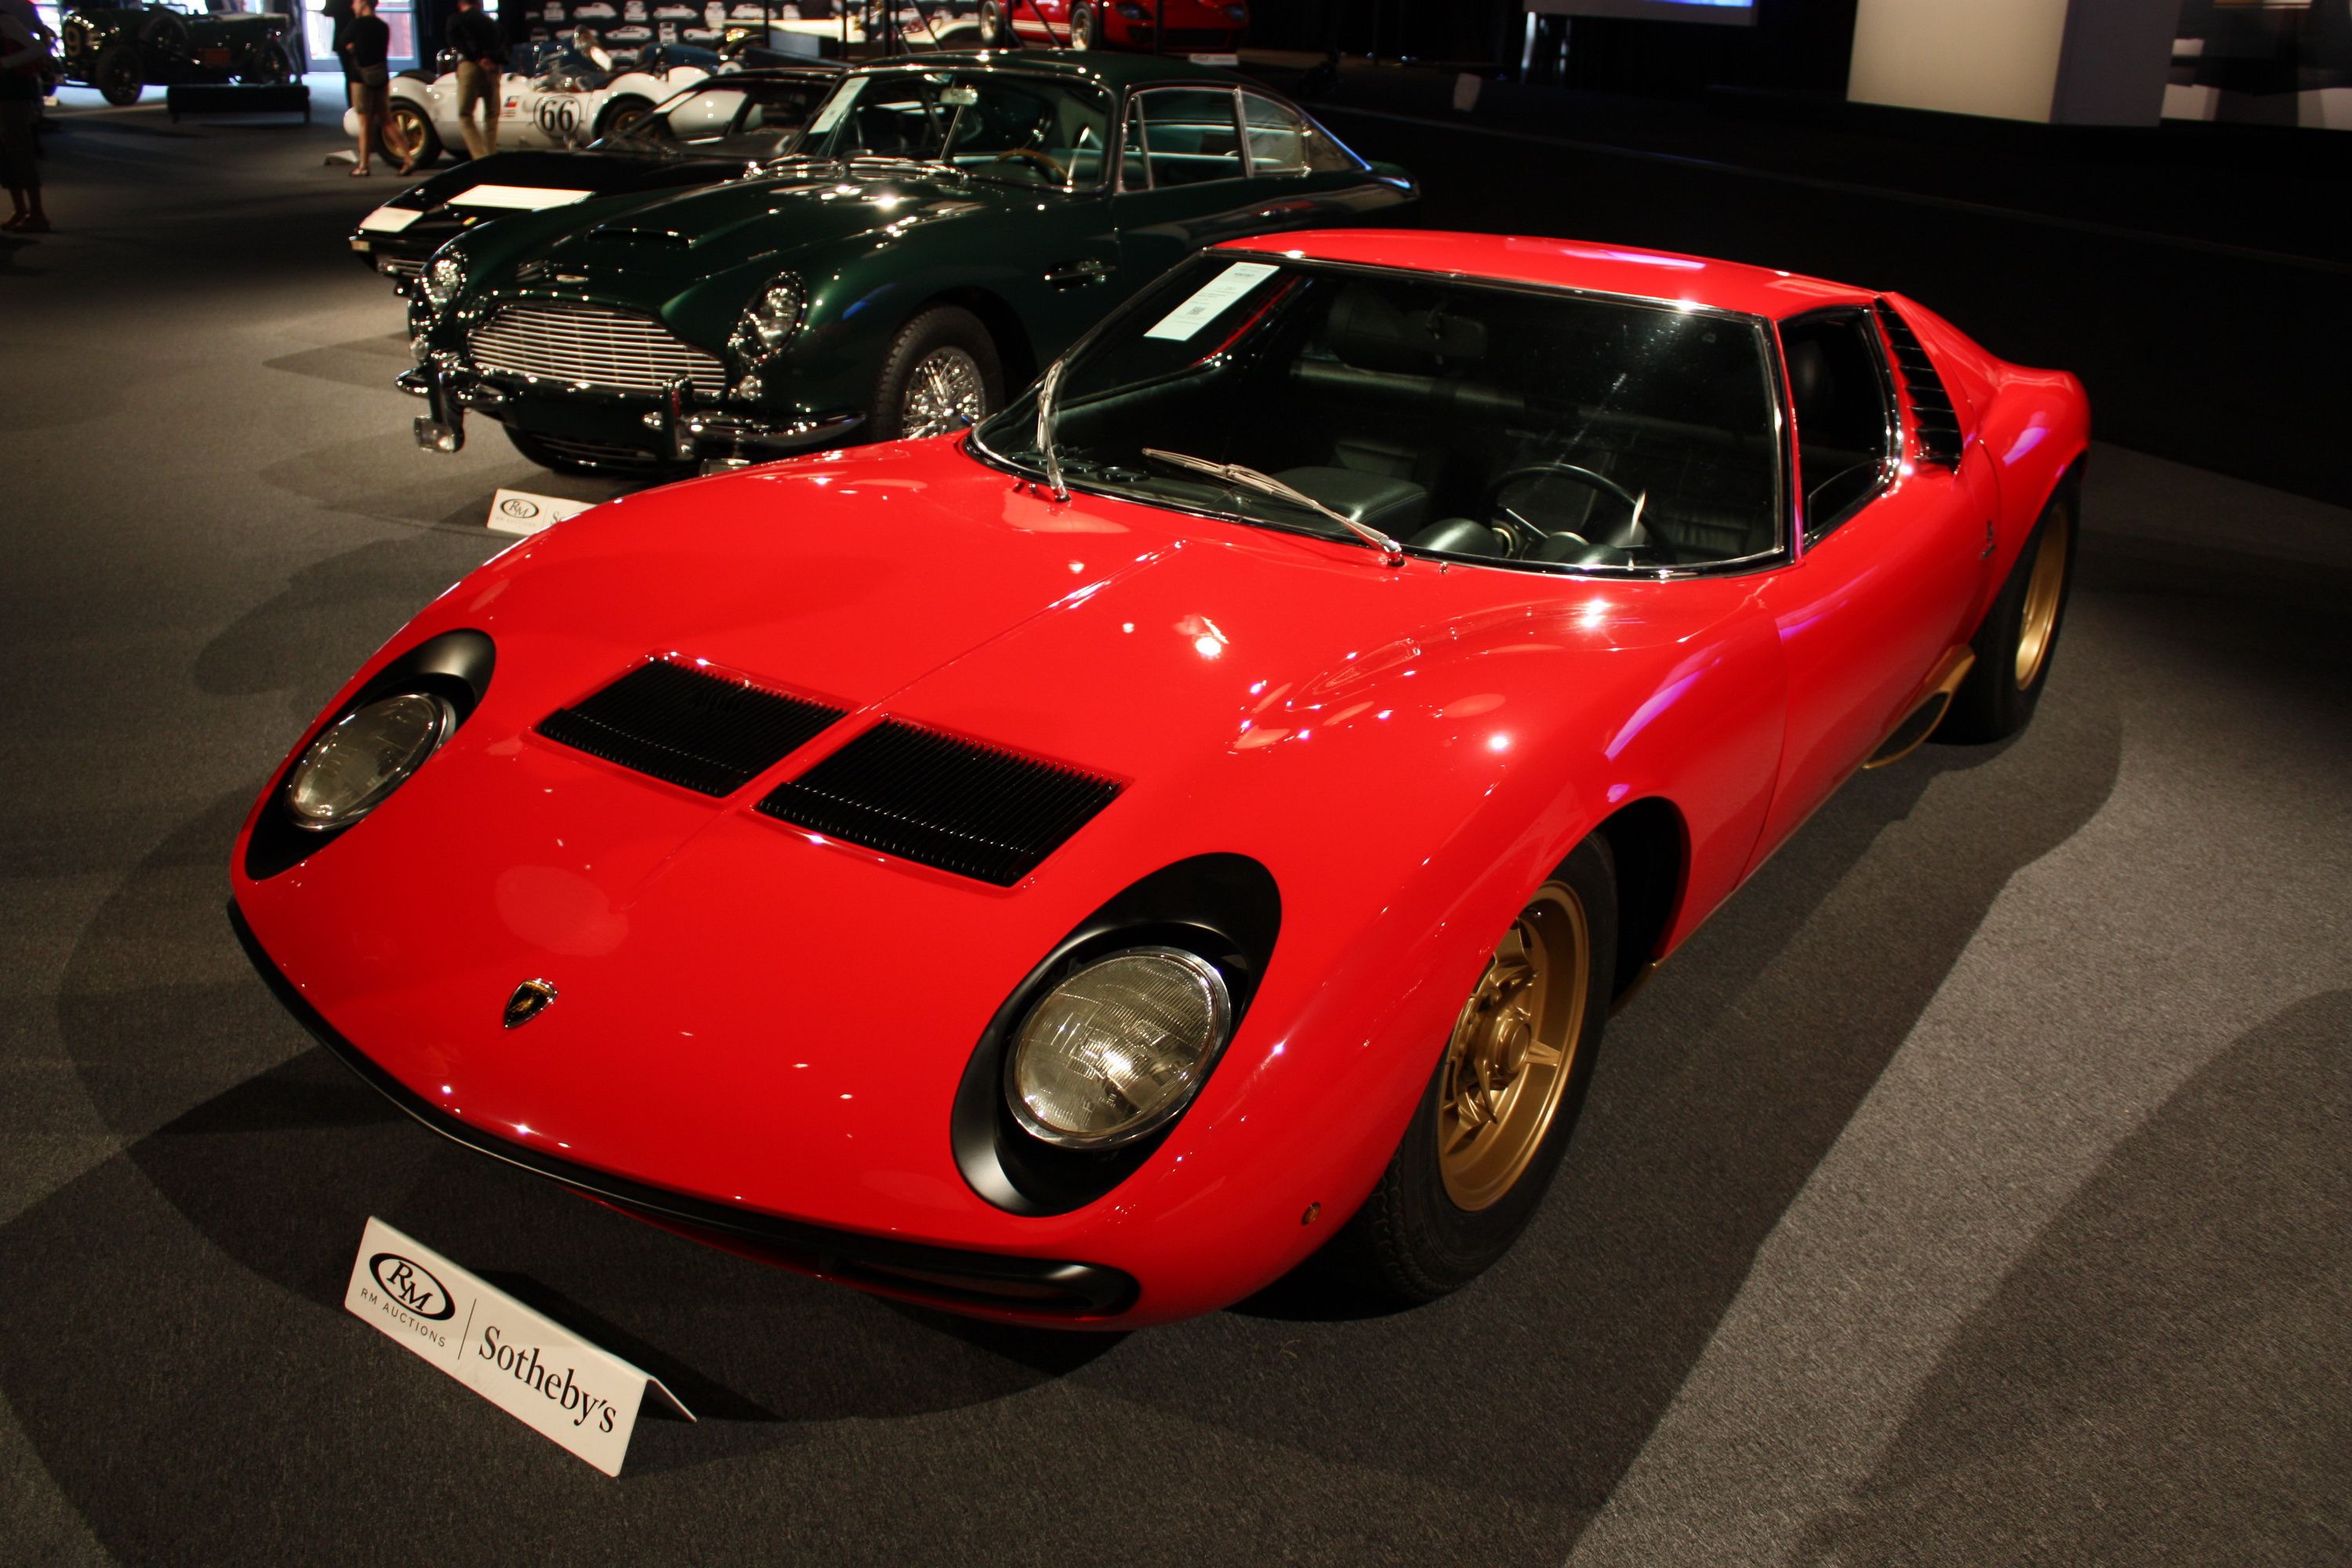 1971 - 1972 Lamborghini Miura SV